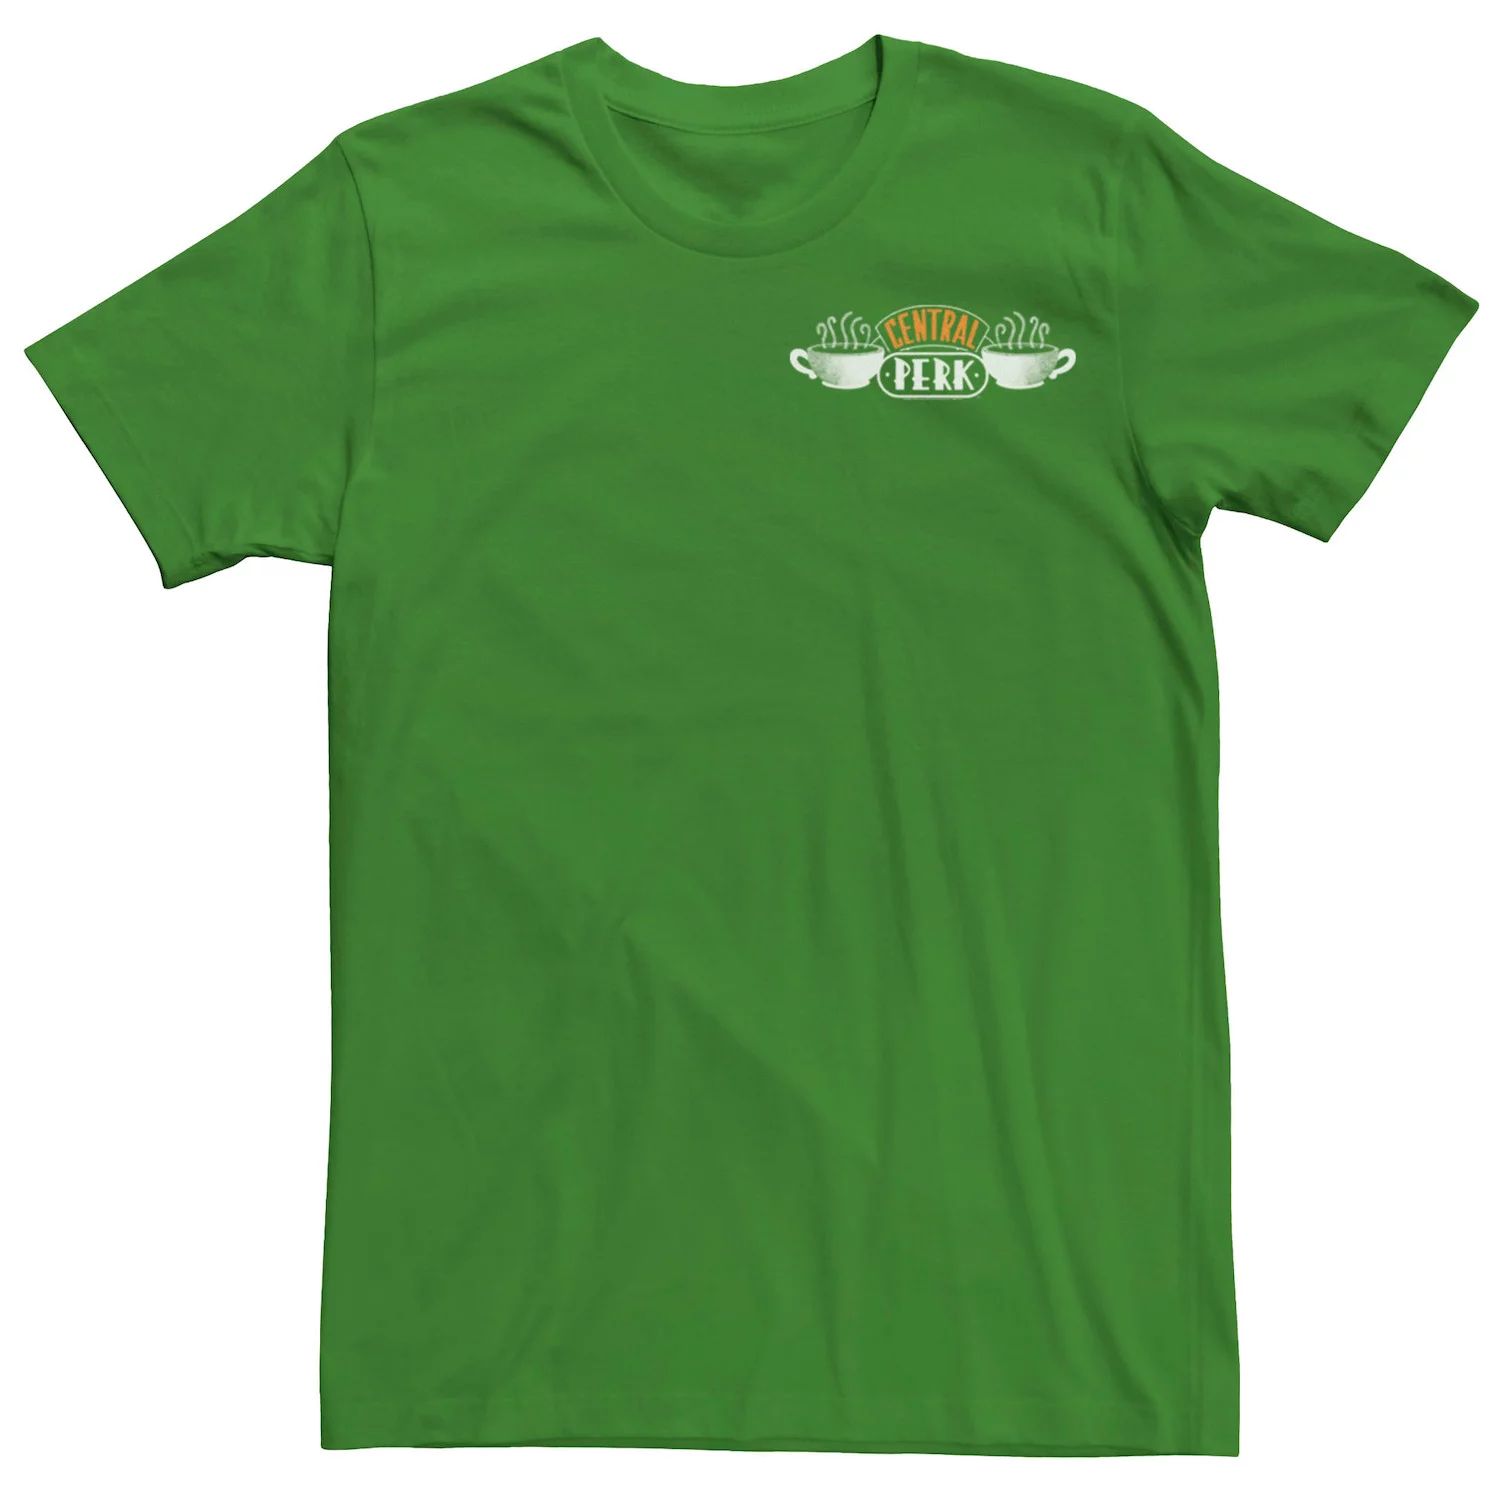 Мужская футболка с логотипом и карманами Central Perk Friends Licensed Character цена и фото